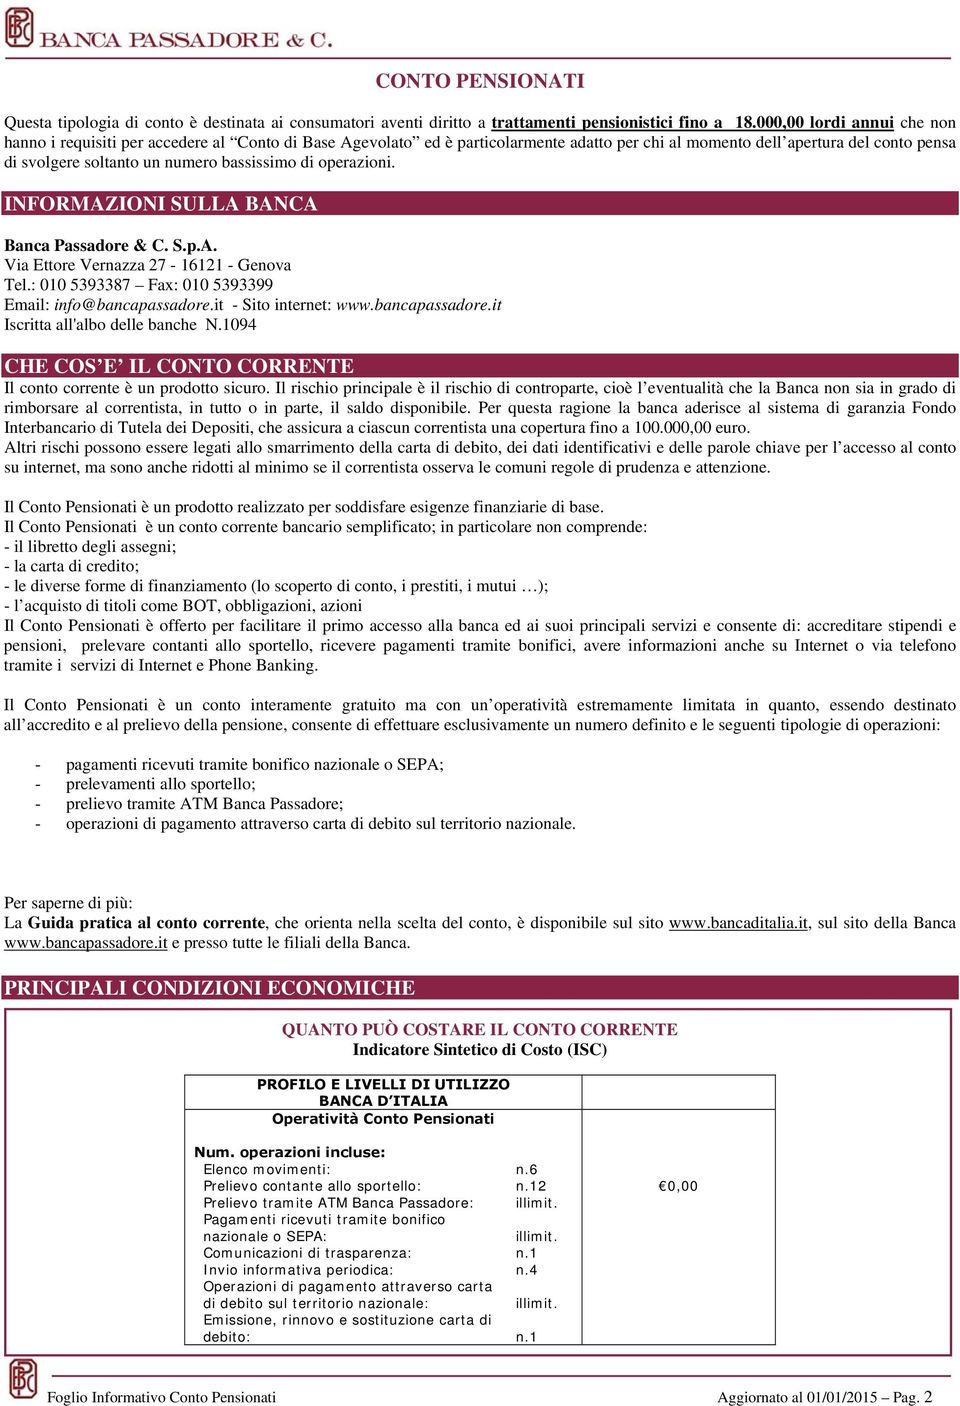 bassissimo di operazioni. INFORMAZIONI SULLA BANCA Banca Passadore & C. S.p.A. Via Ettore Vernazza 27-16121 - Genova Tel.: 010 5393387 Fax: 010 5393399 Email: info@bancapassadore.